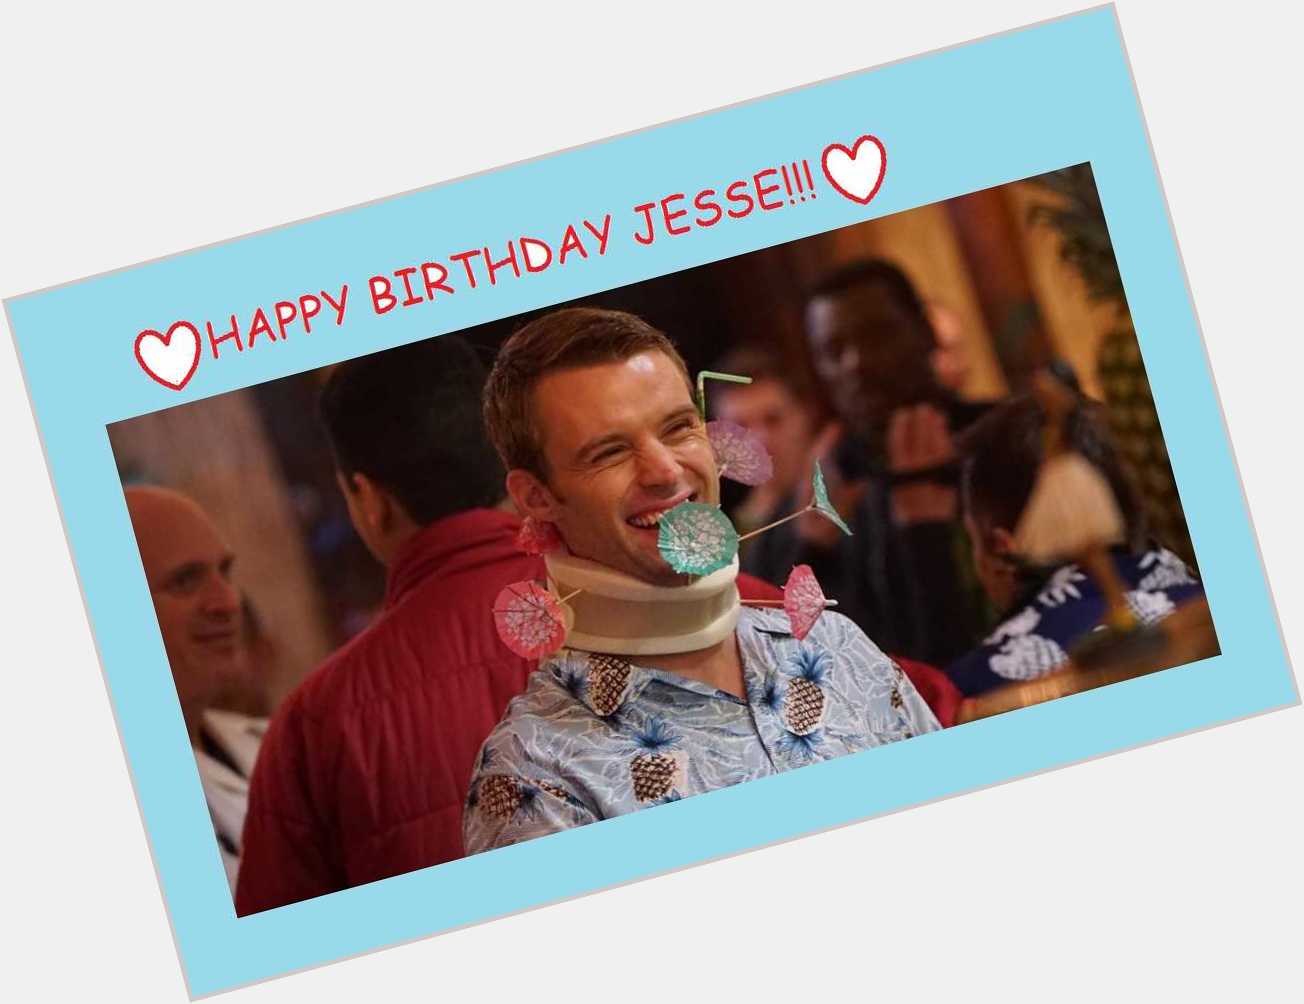  Happy Birthday Jesse ! 